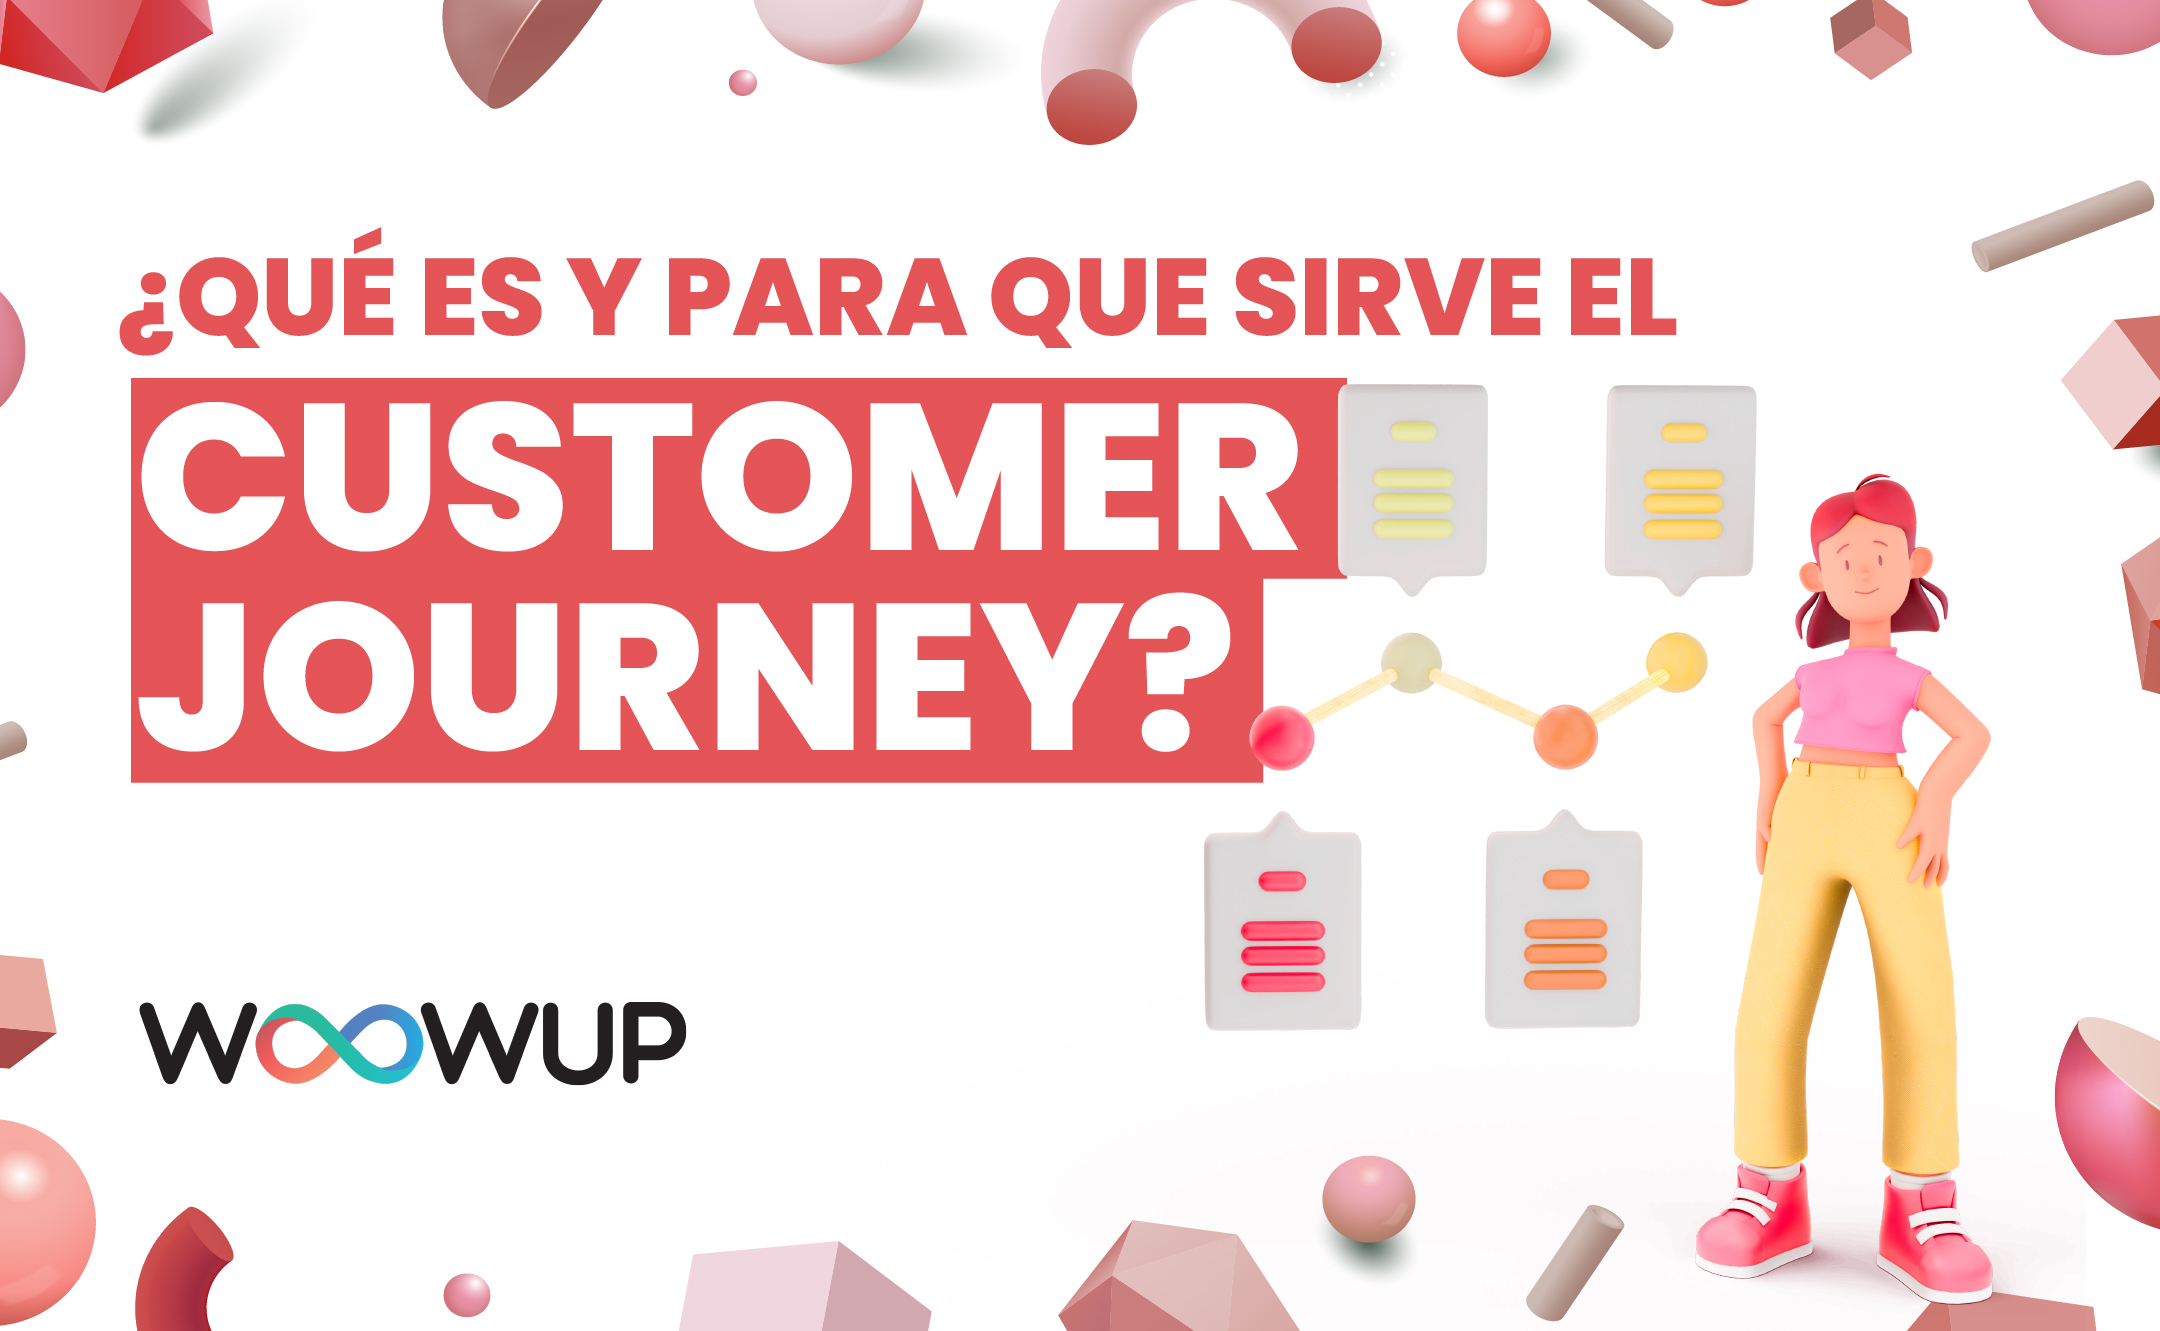 ¿Qué es y para que sirve el Customer Journey?